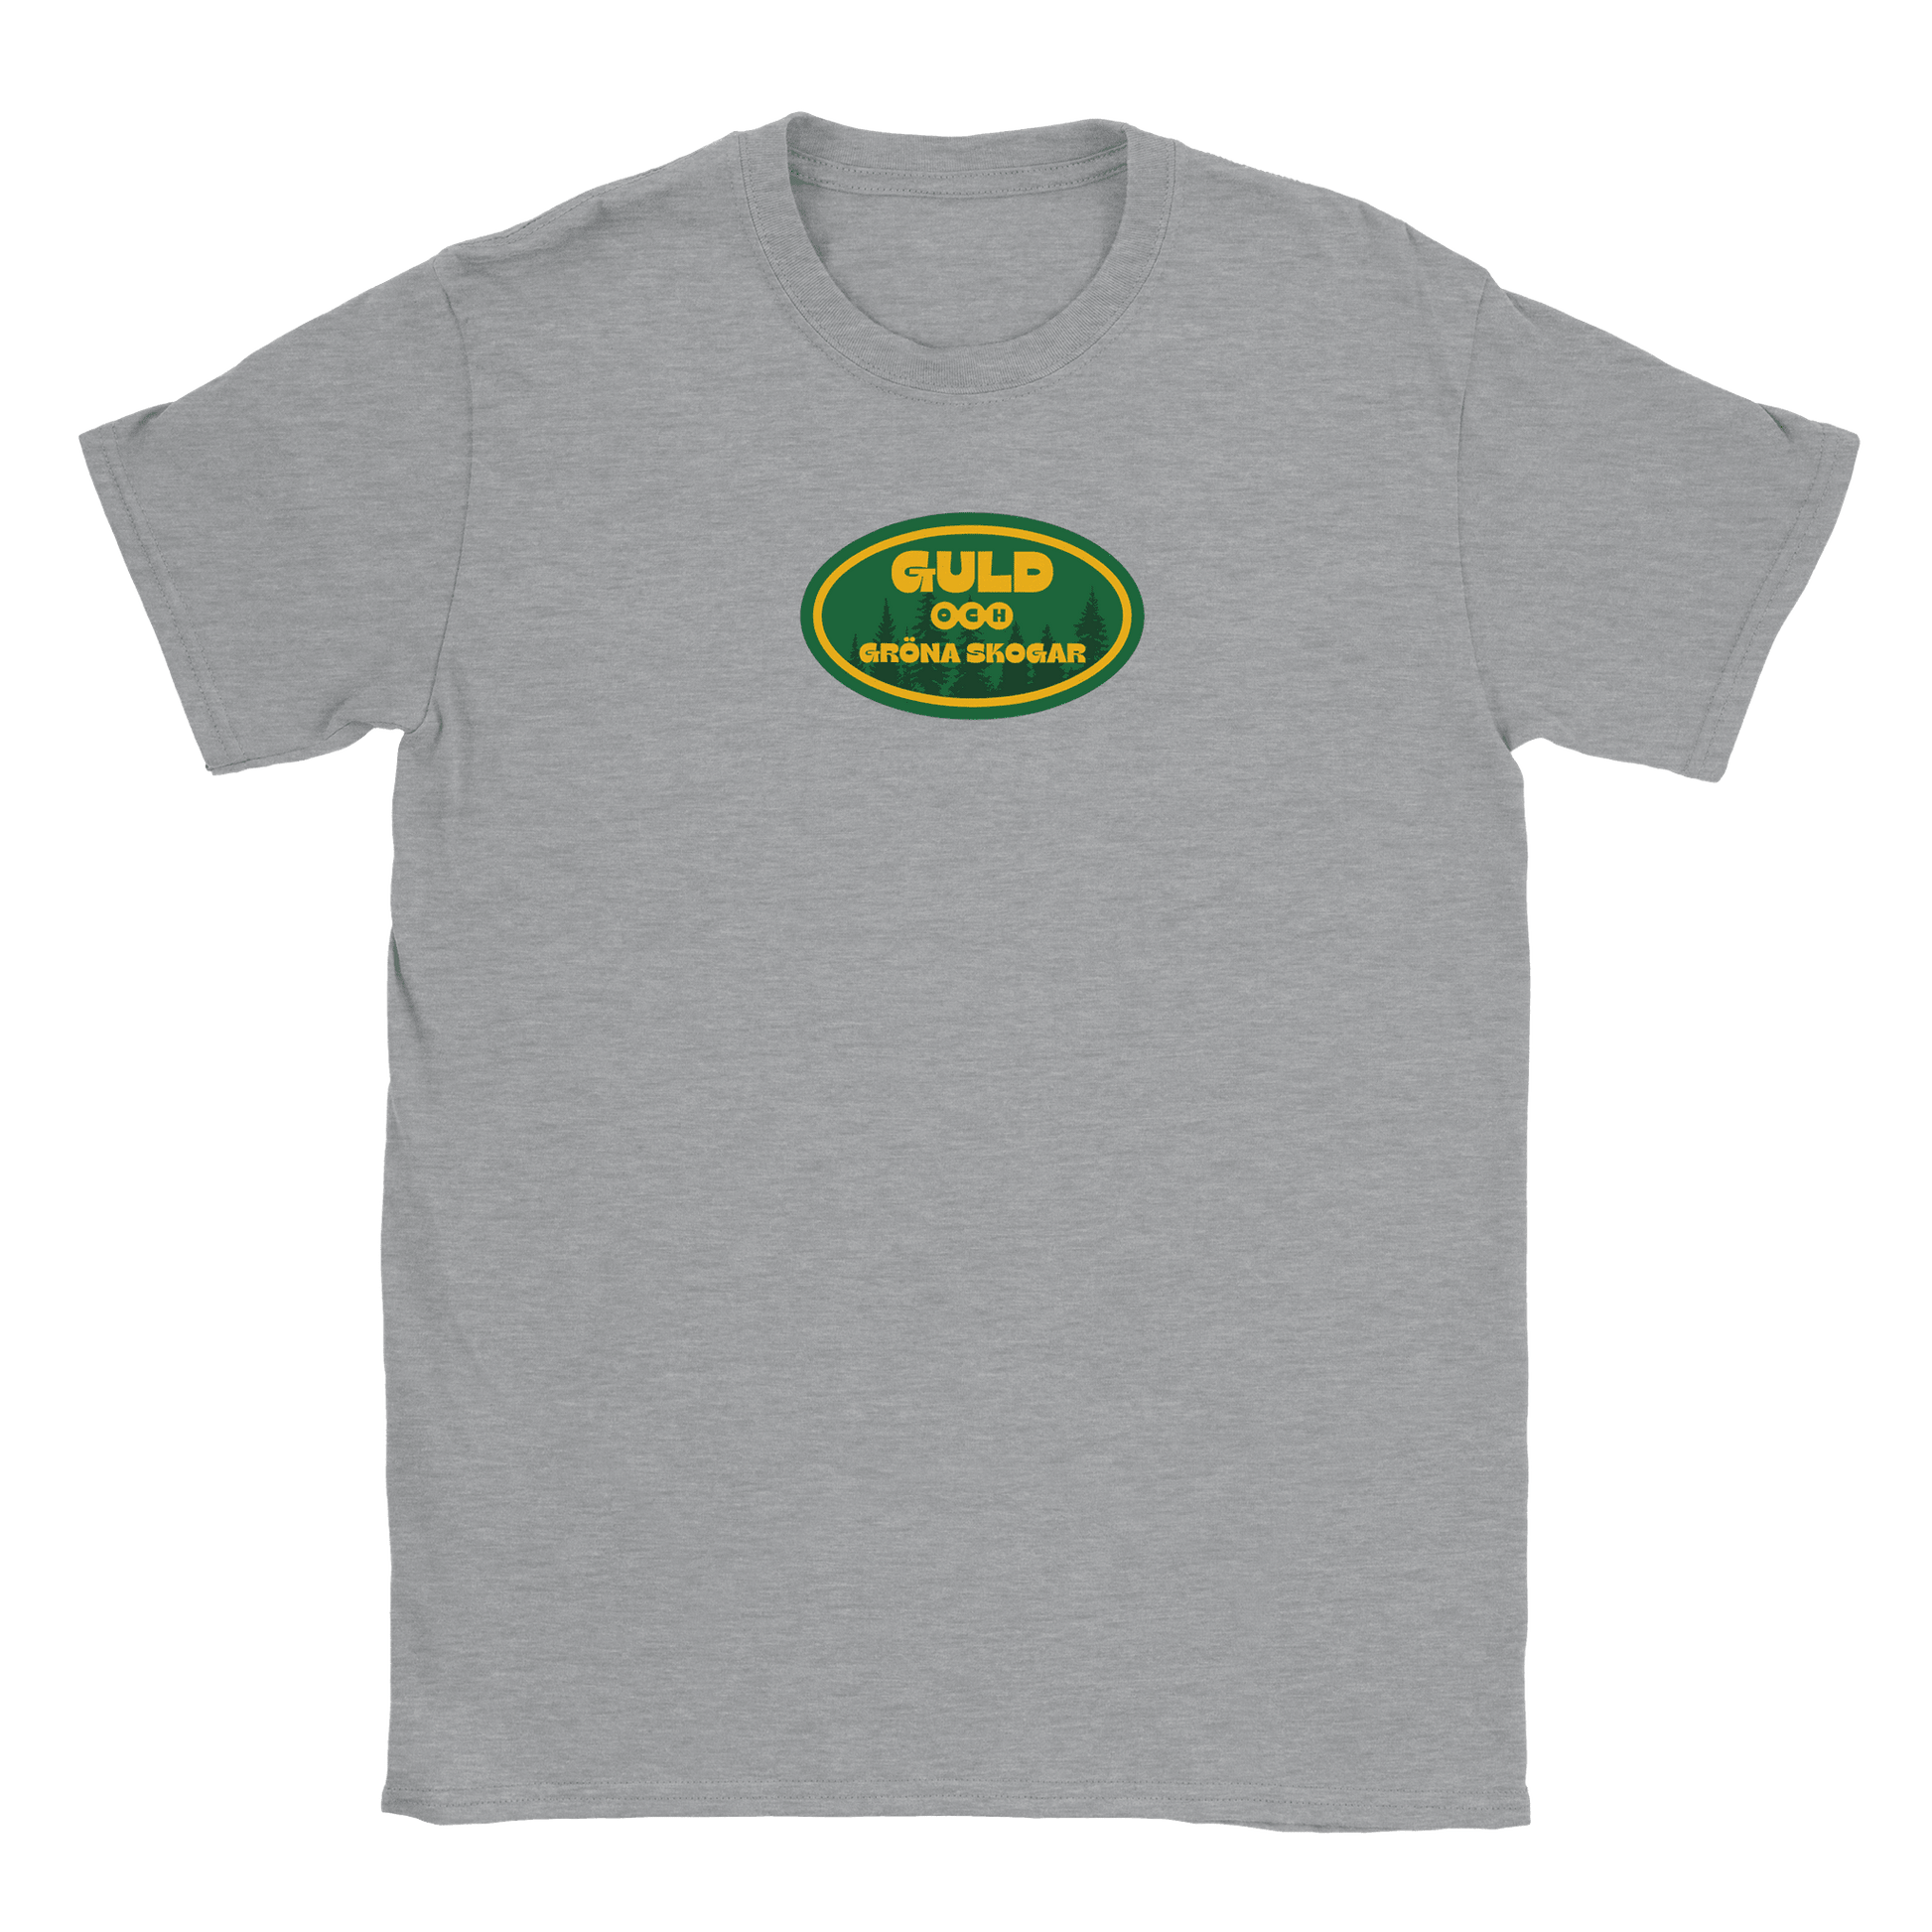 Guld och gröna skogar - T-shirt Grå